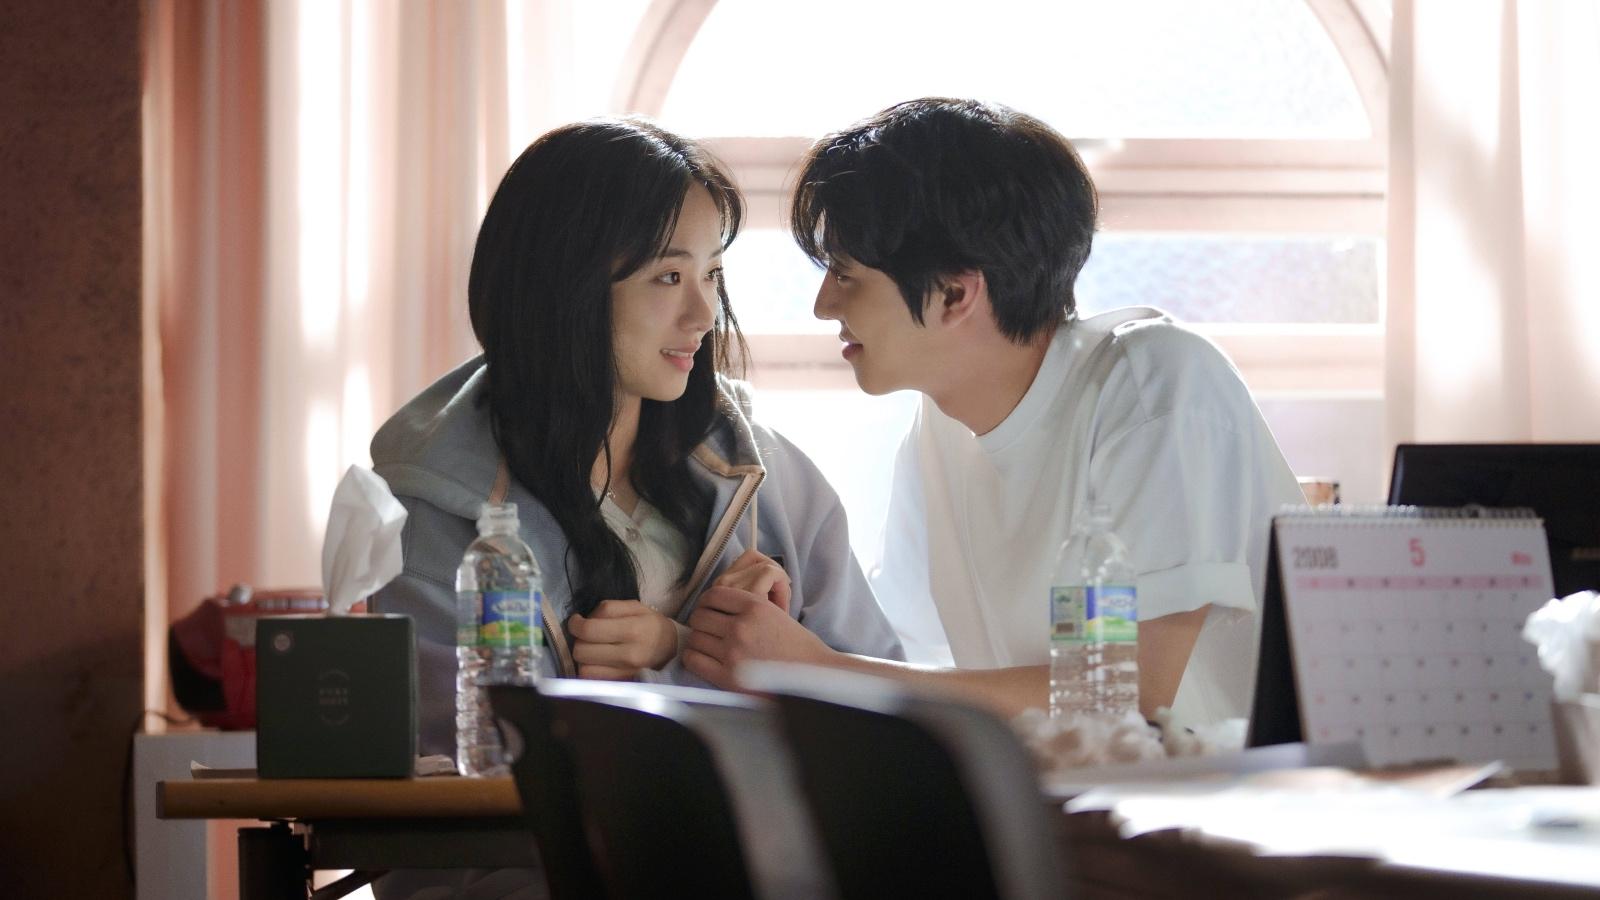 A Time Called You stars Jeon Yeo-bin and Ahn Hyo-seop